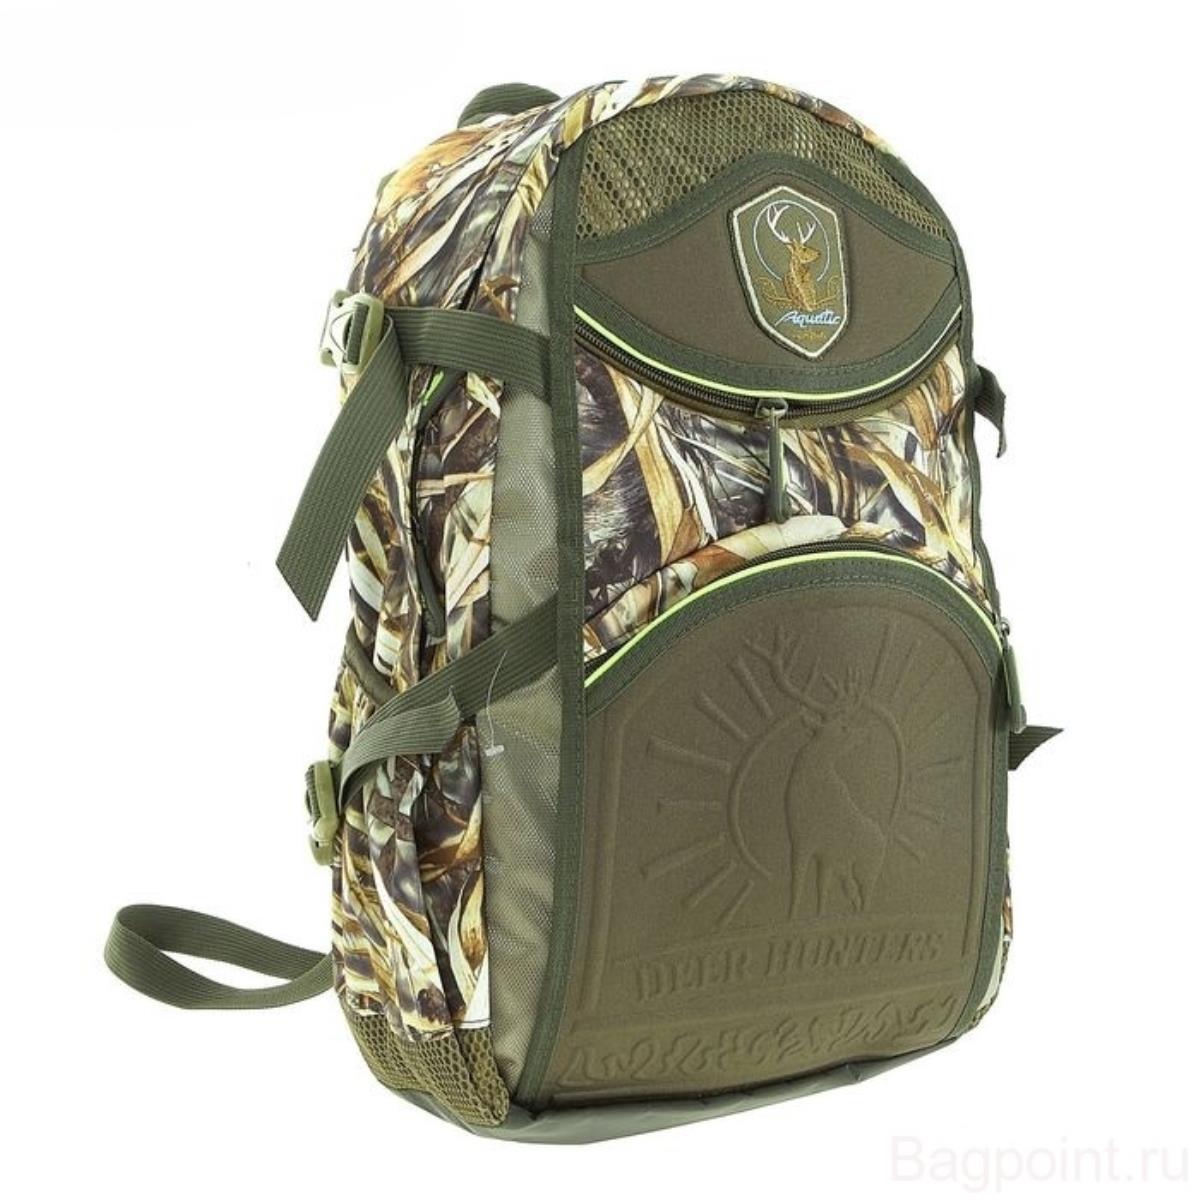 Рюкзак для охоты 32л (РО-32) Aquatic рюкзак отдел на молнии 2 наружных кармана зелёный